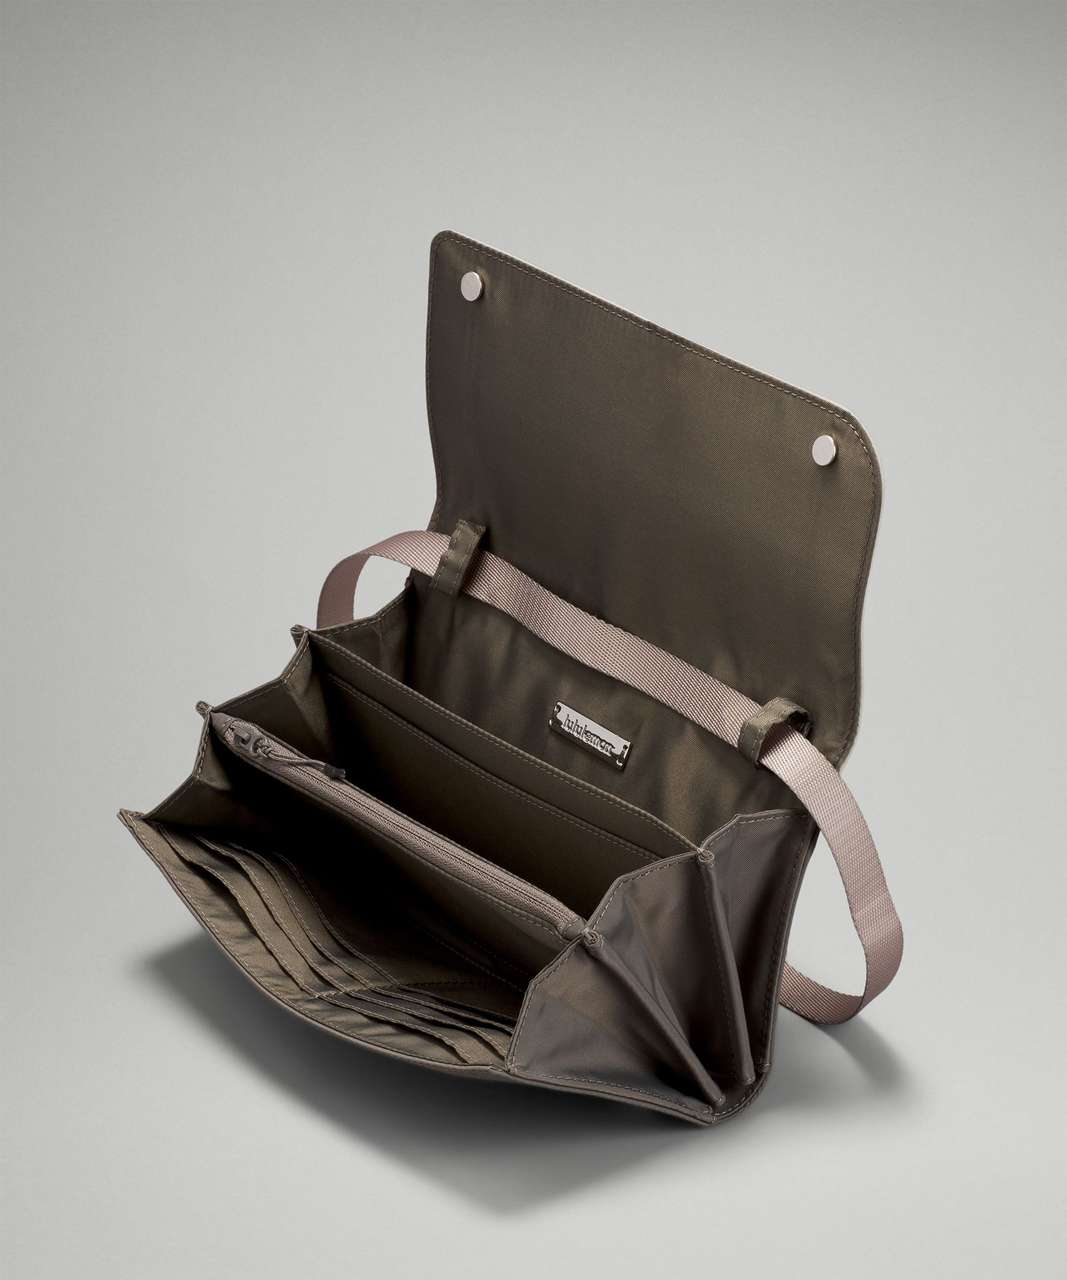 Lululemon Women's Wallet Clutch Crossbody Bag